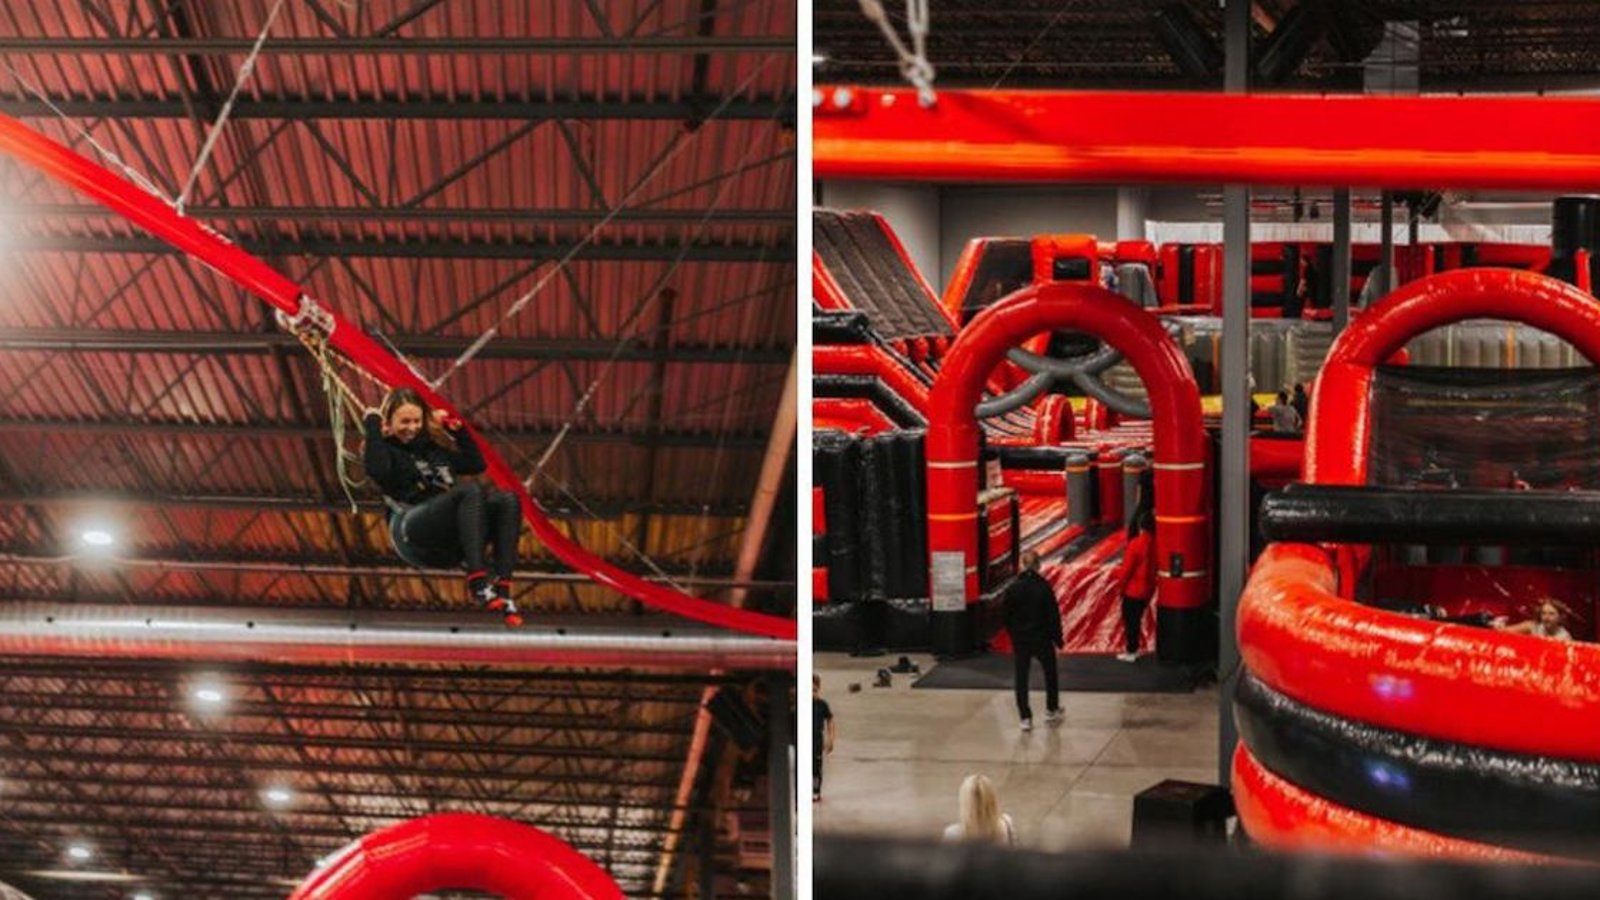 Sortie familiale: un centre de jeux gonflables géant a ouvert ses portes sur la Rive-Sud